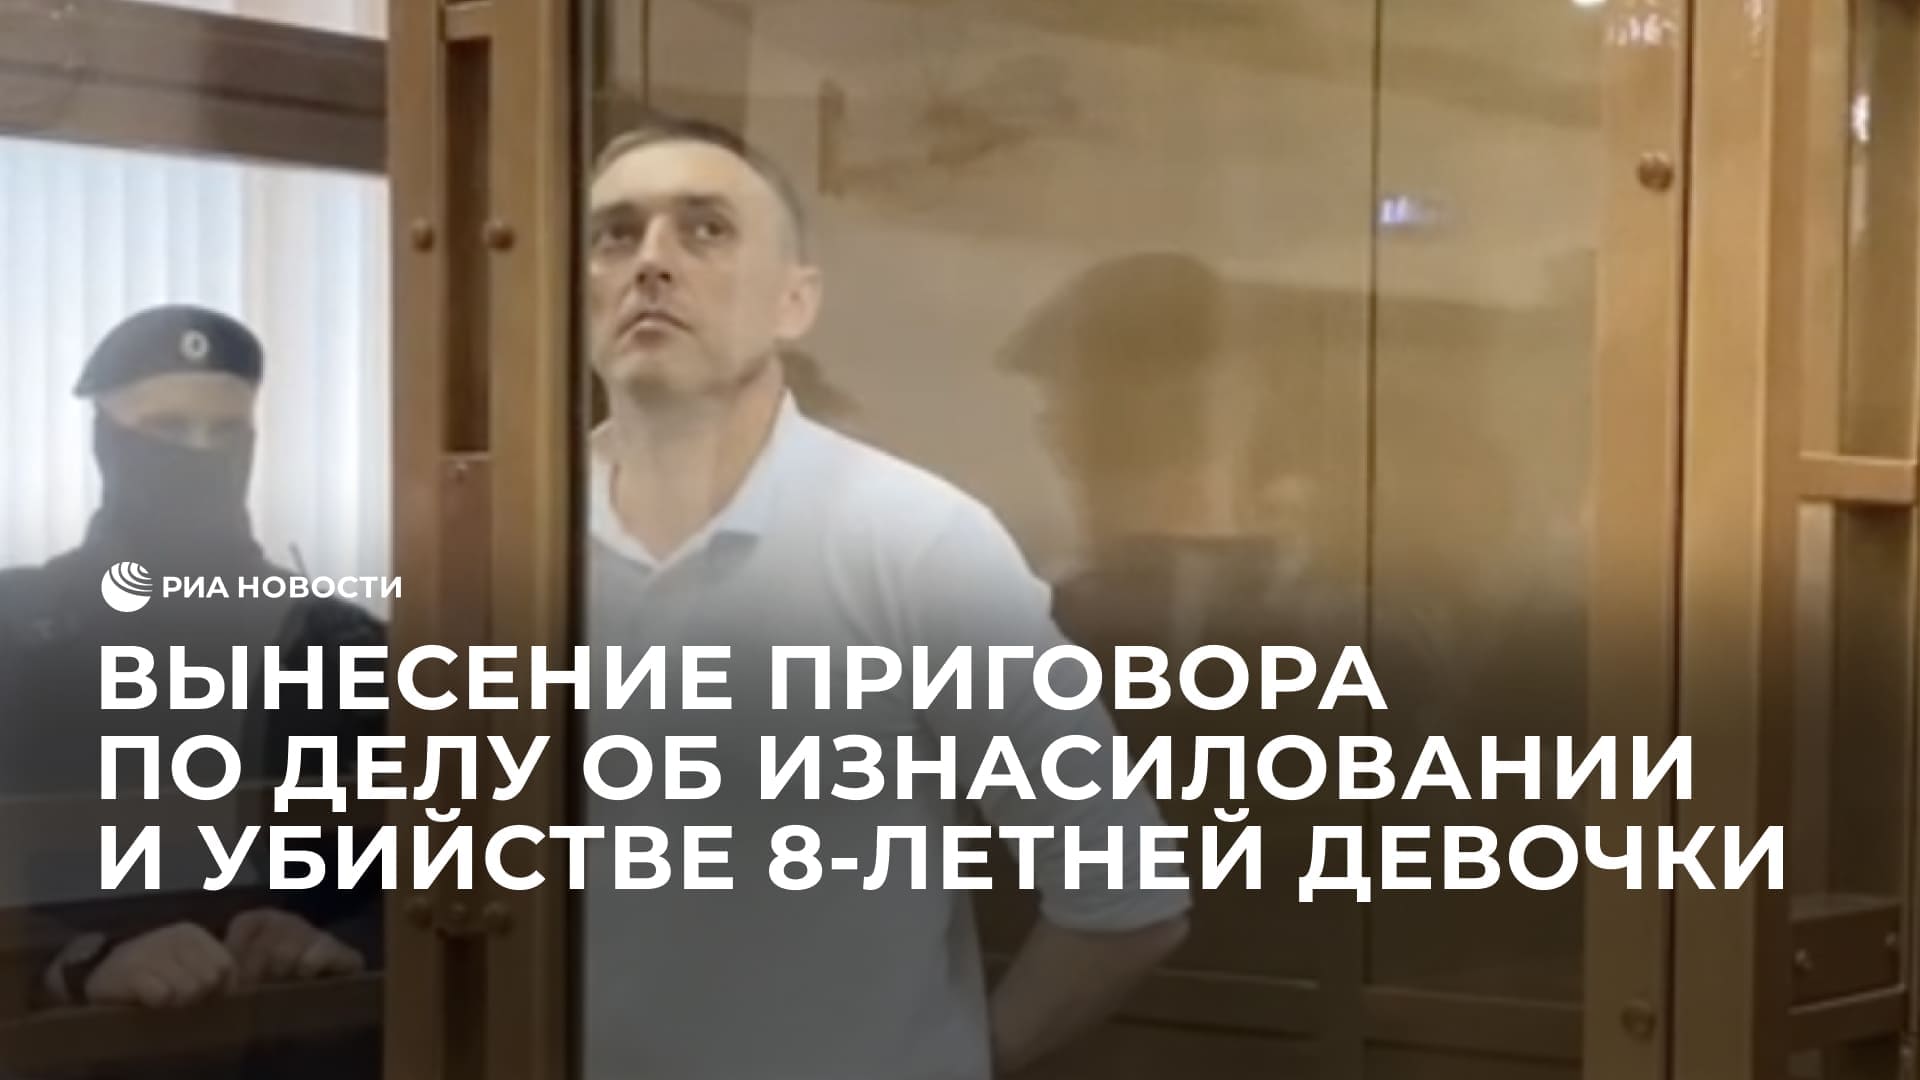 Вынесение приговора Виталию Бережному по делу об изнасиловании и убийстве девочки